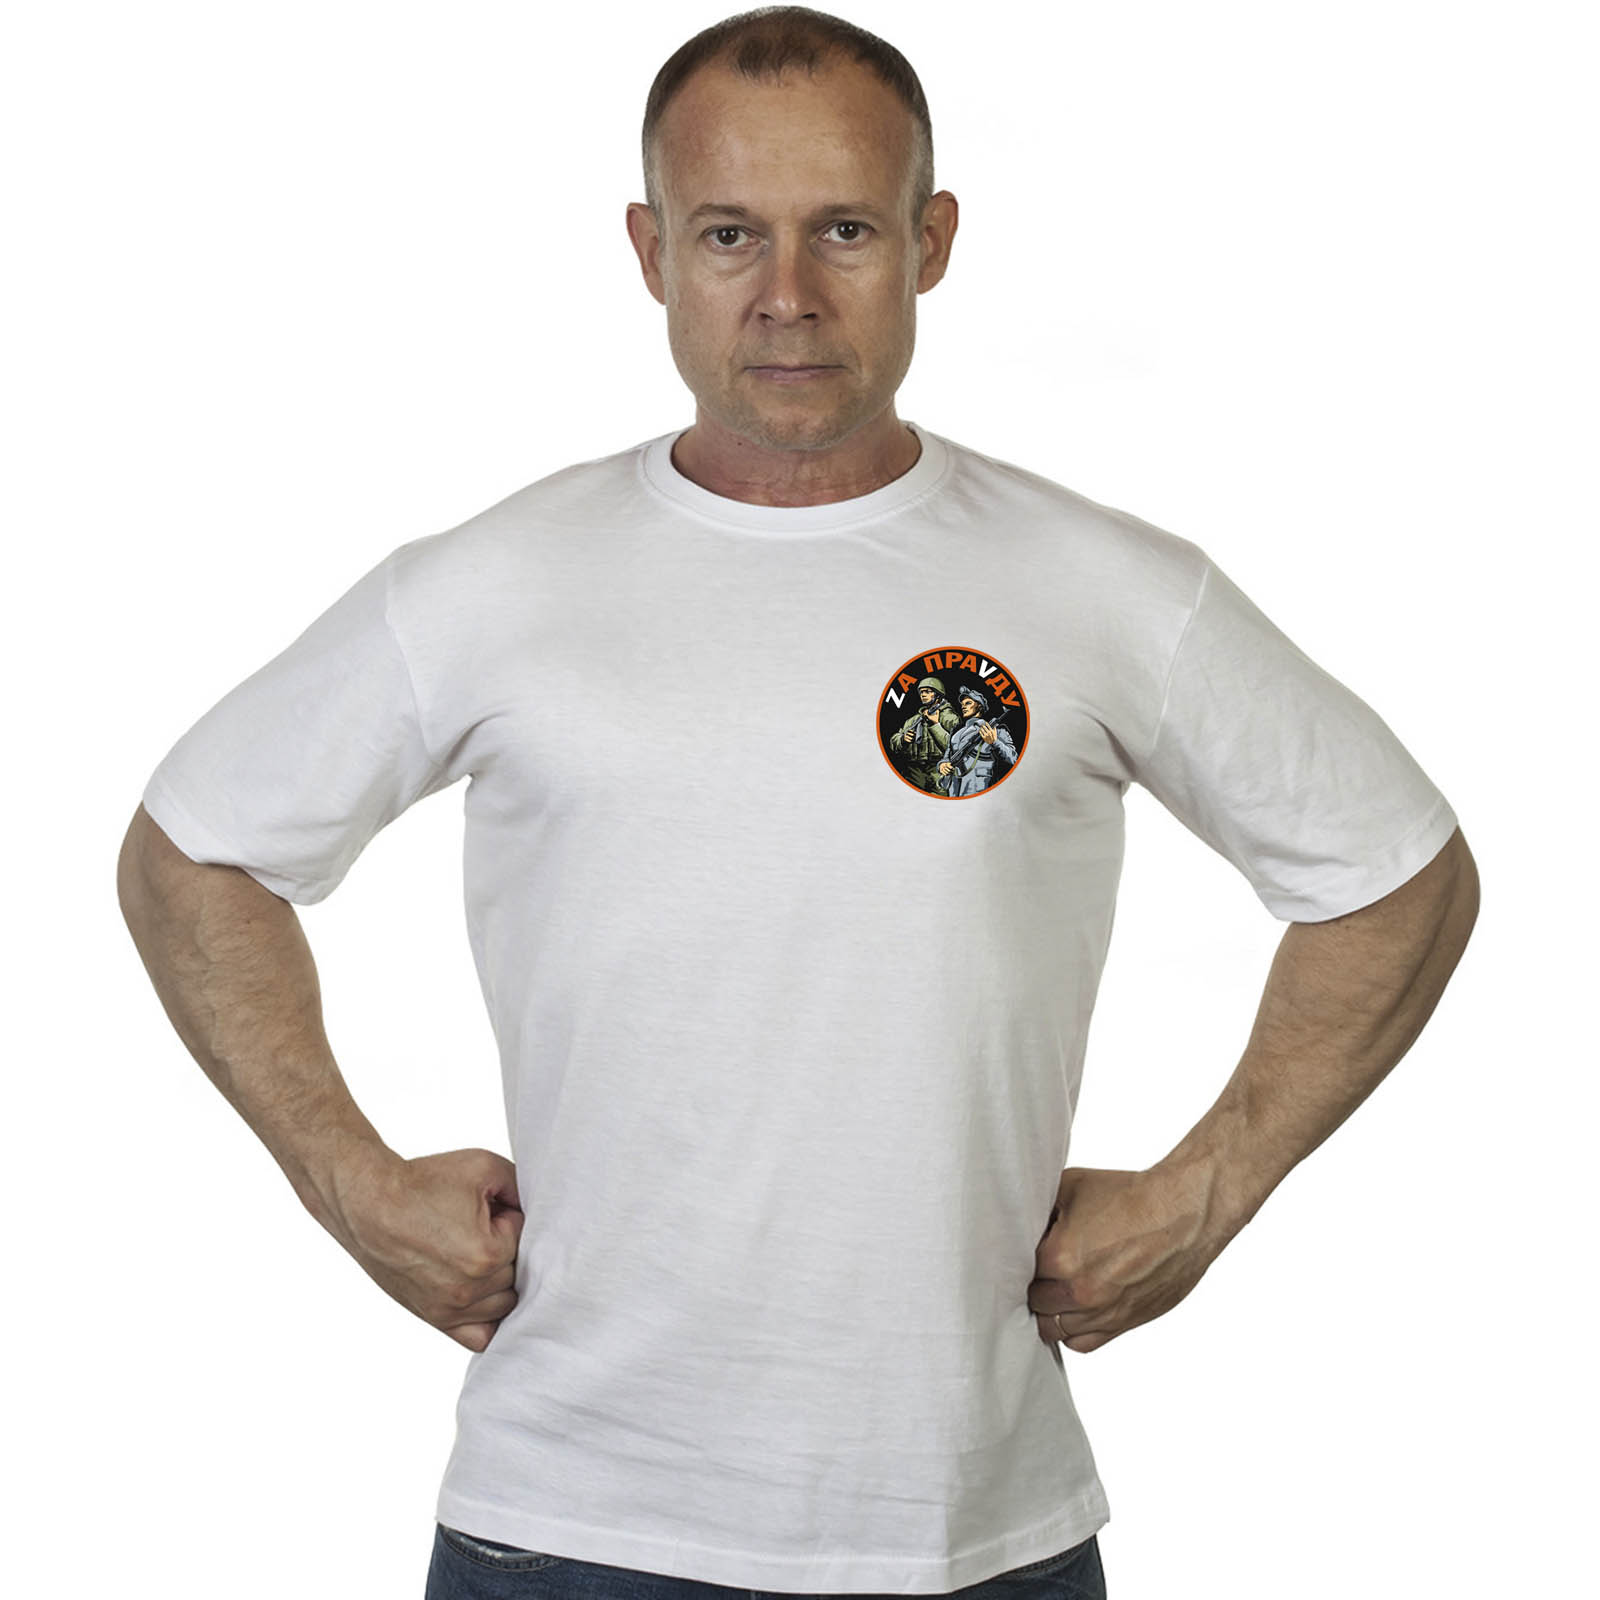 Белая футболка с термотрансфером "Zа праVду"